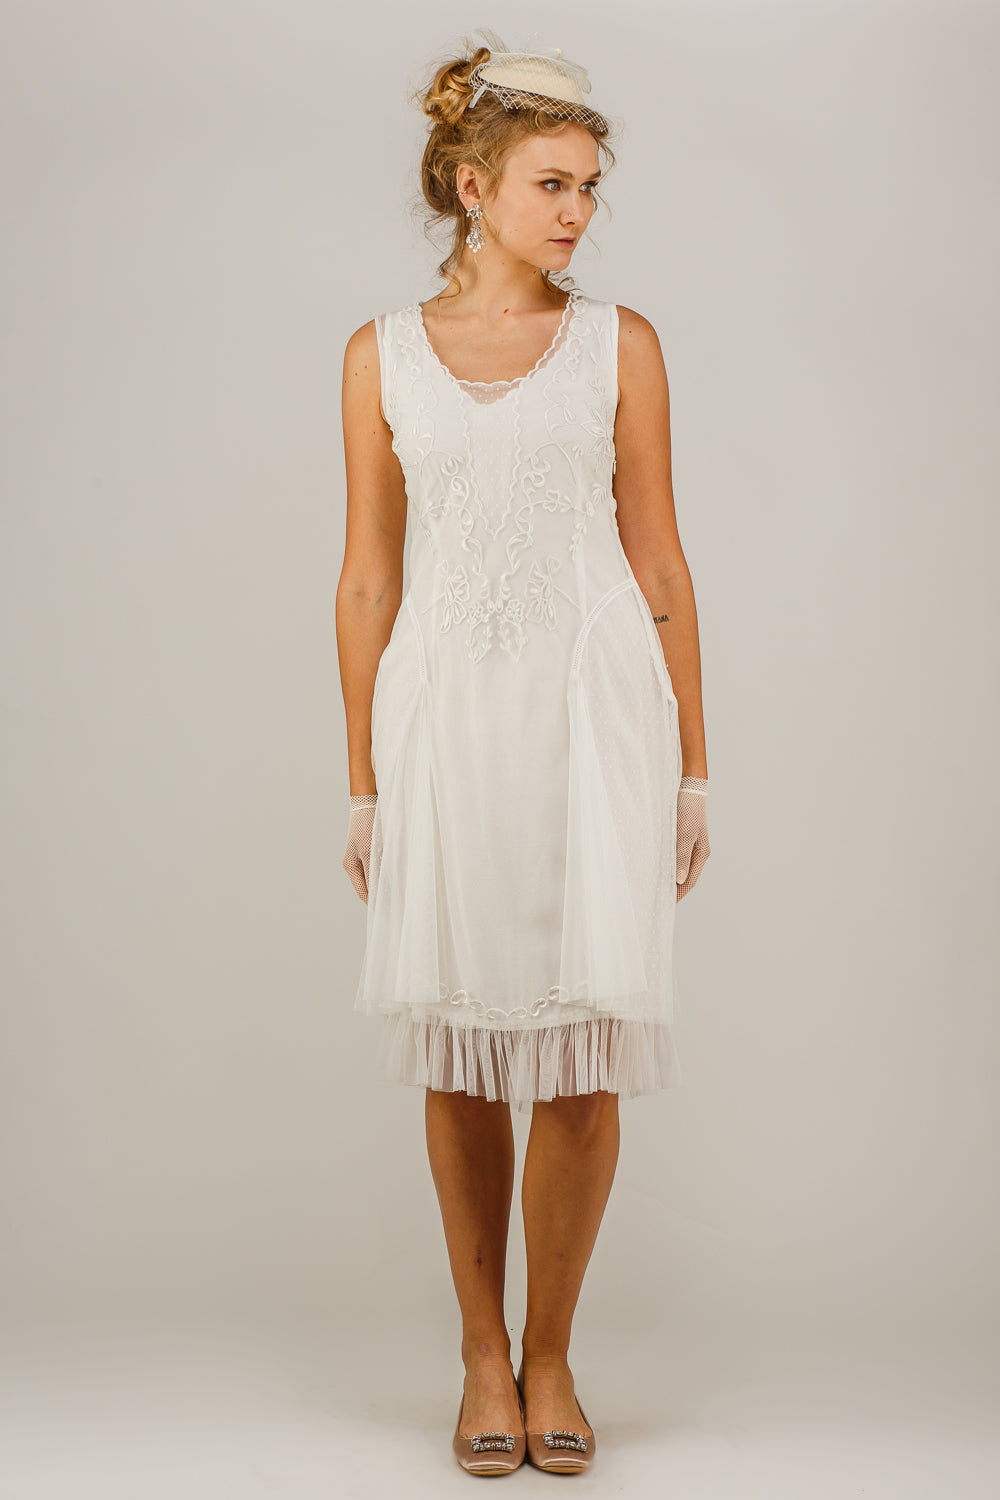 Nataya Tara AL-254 Ivory Dress